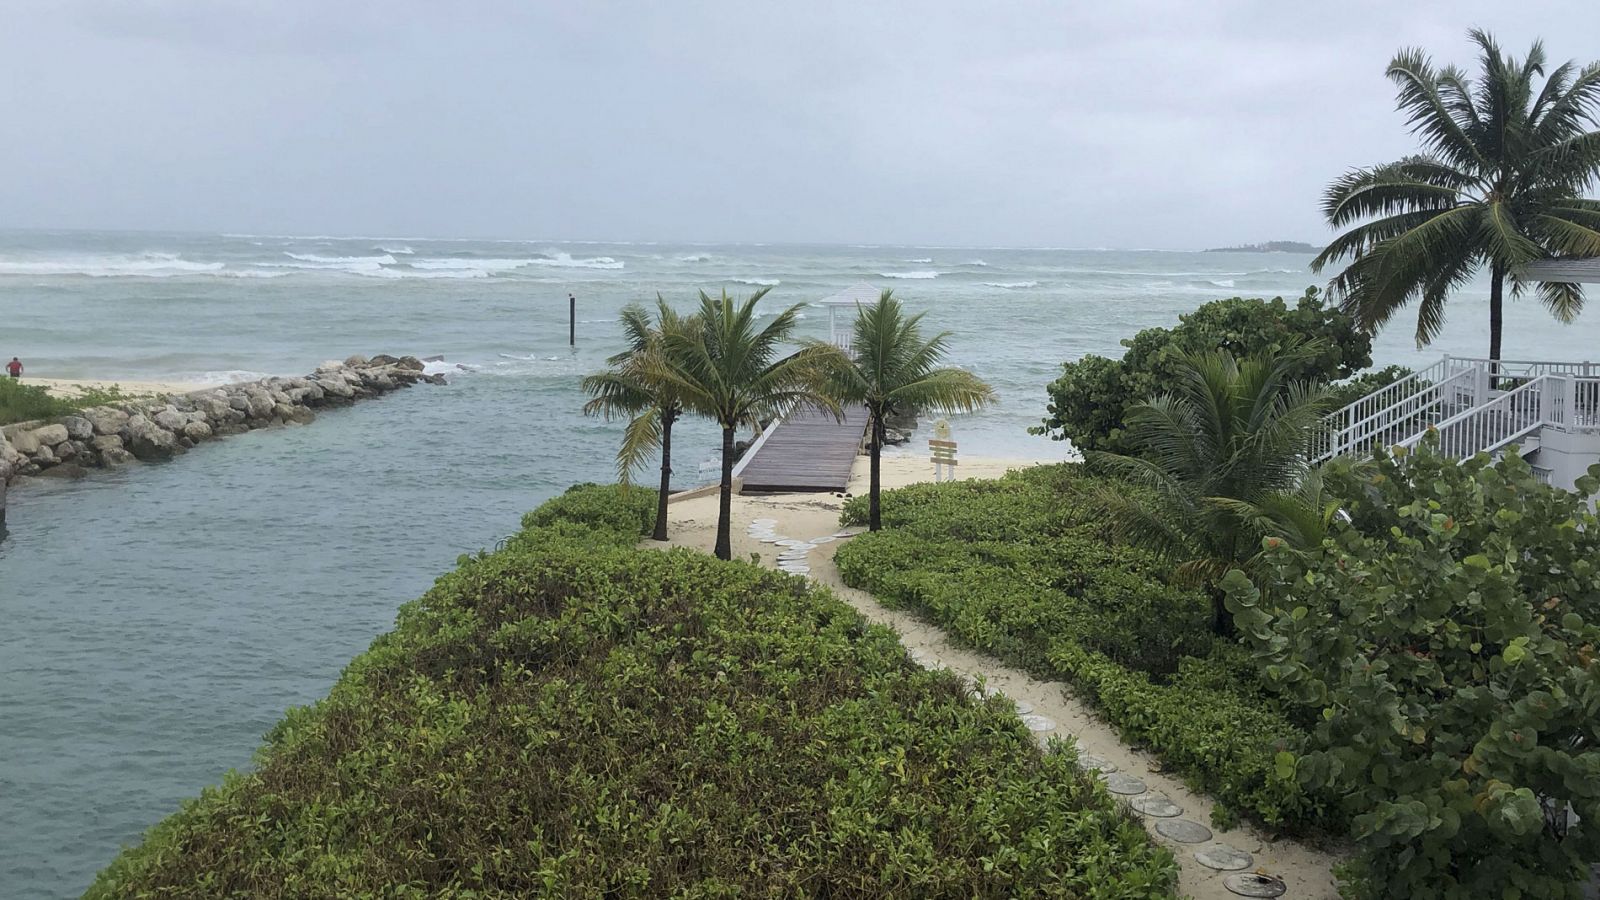 Huracán Dorian | El huracán de categoría 5 Dorian azota y descarga su furia sobre las islas Bahamas - RTVE.es